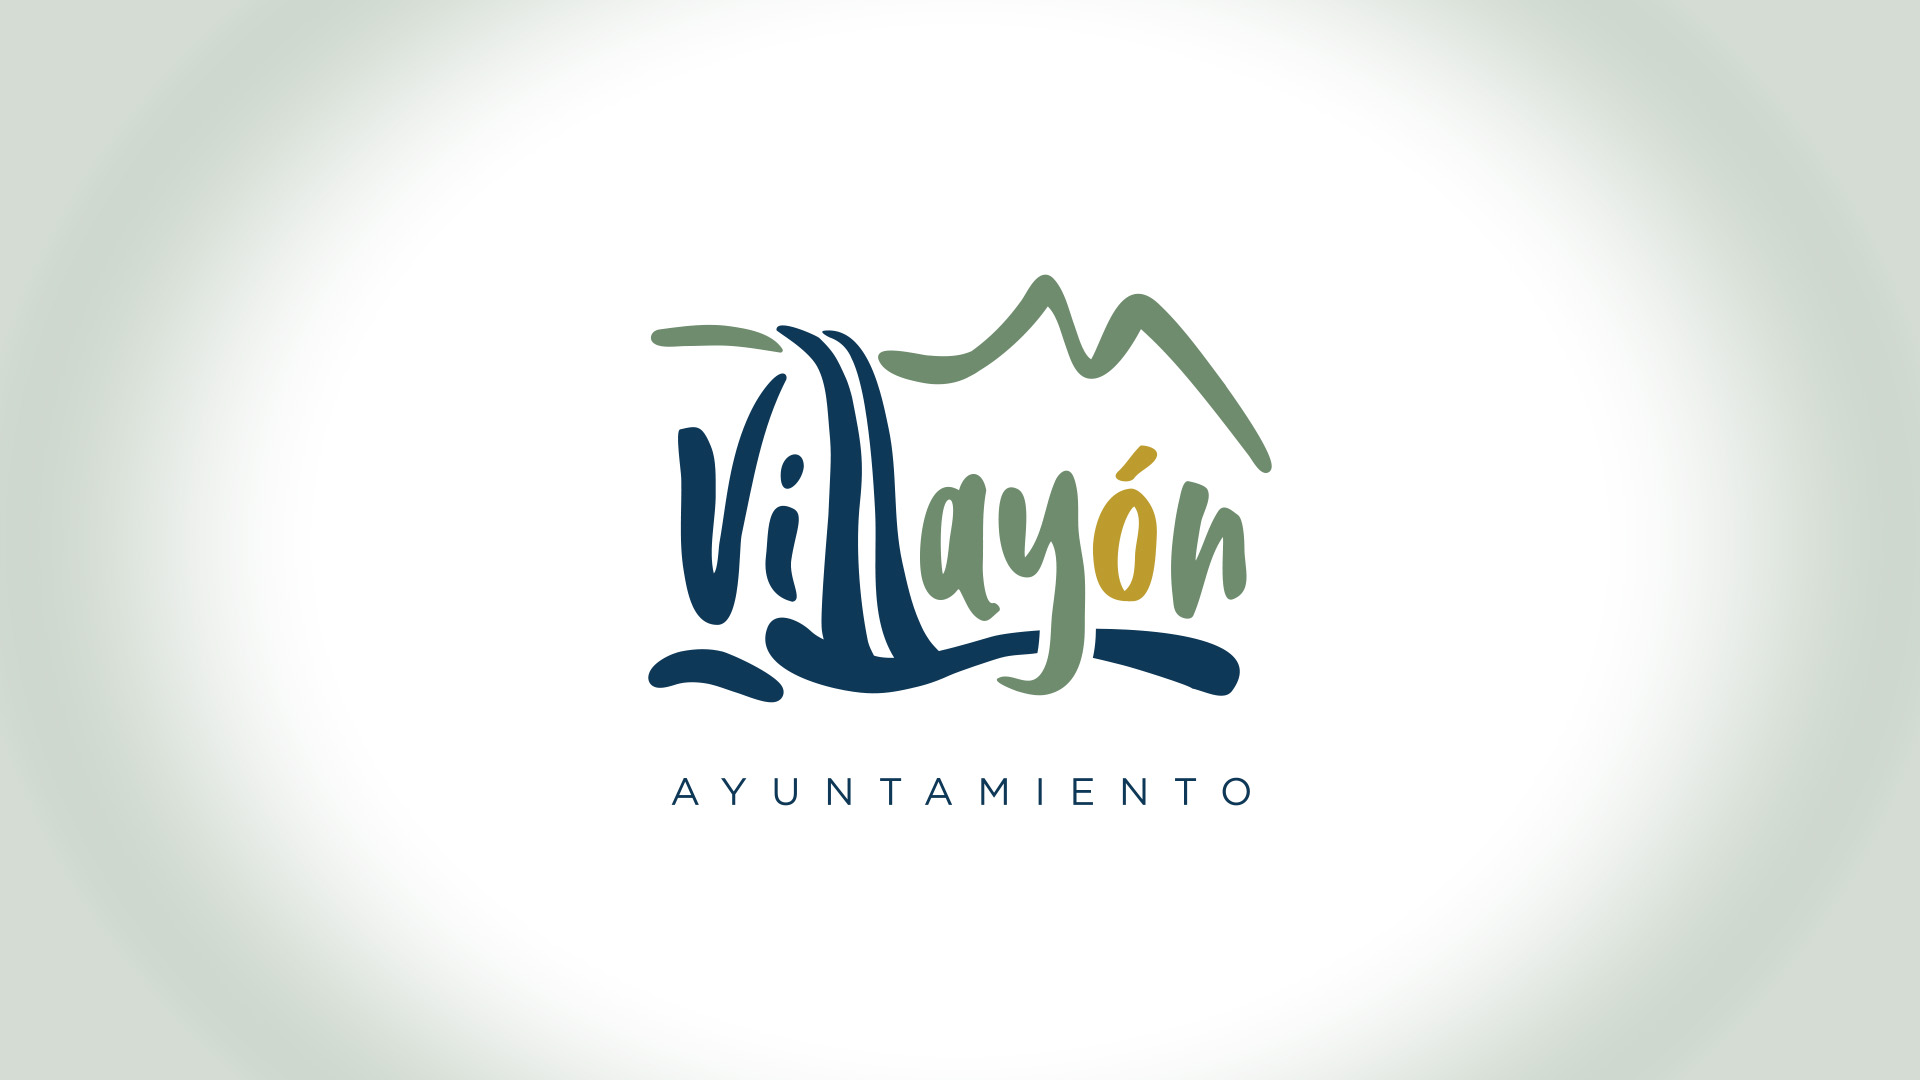 Imagen única para el Ayuntamiento de Villayón